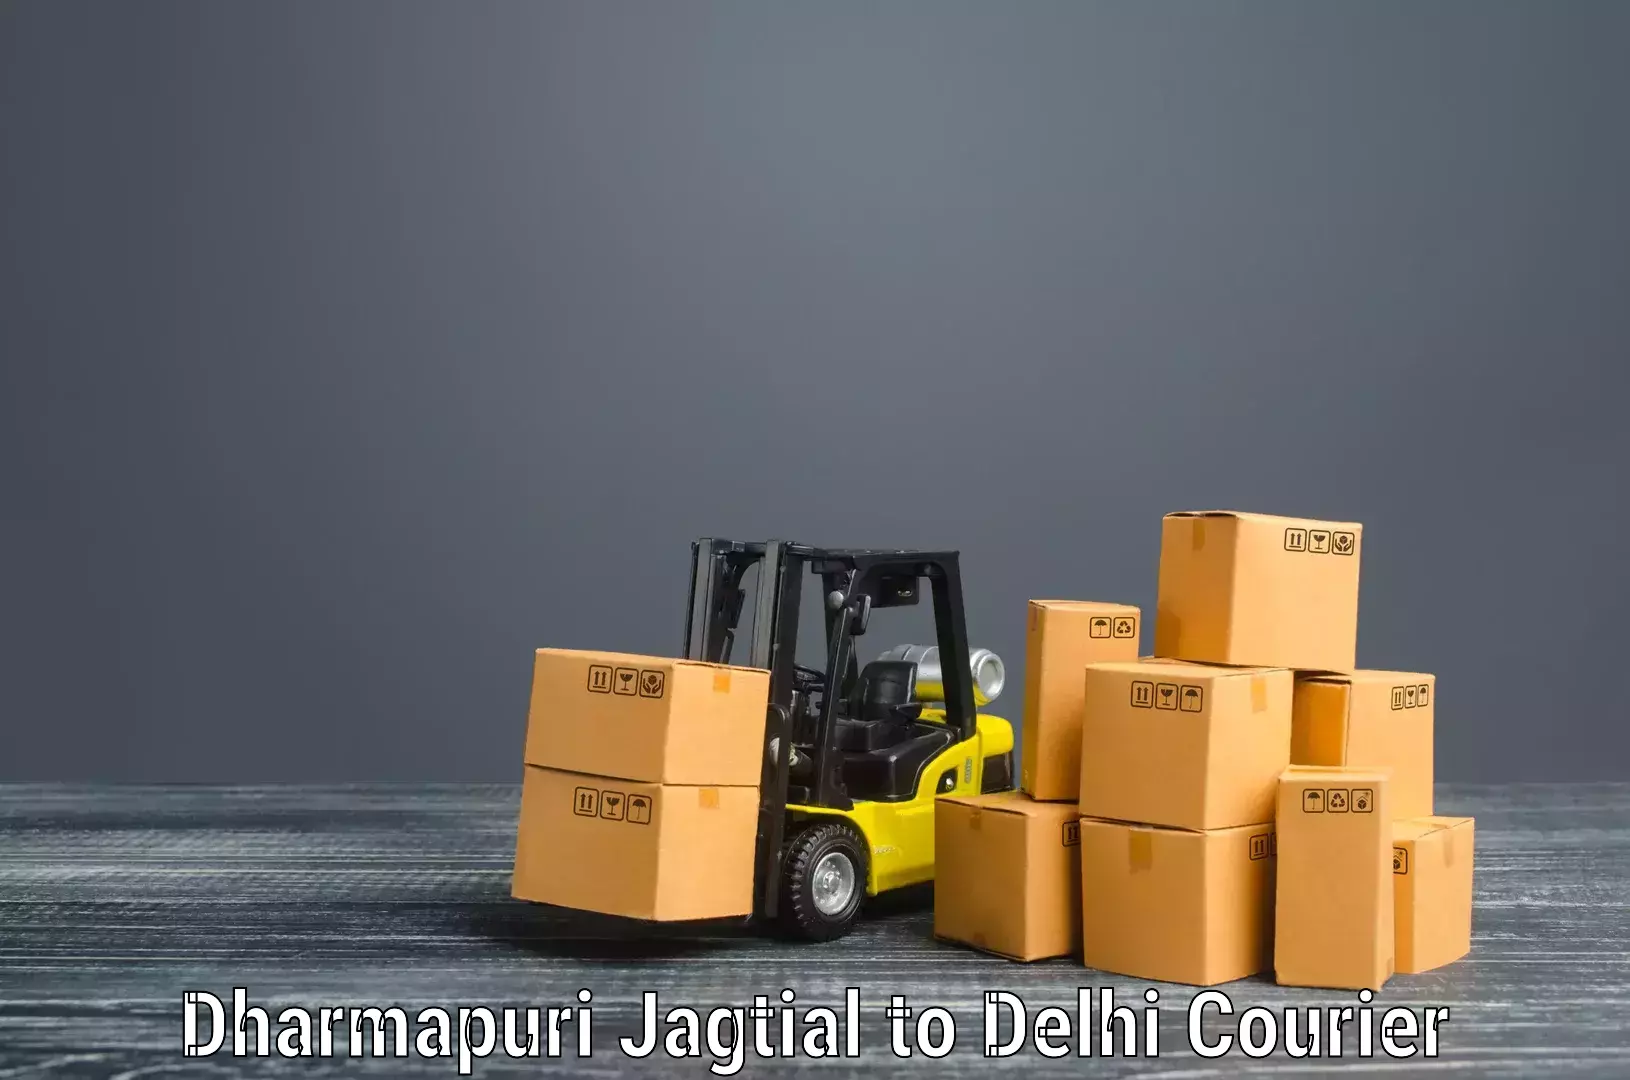 Furniture moving experts Dharmapuri Jagtial to Subhash Nagar